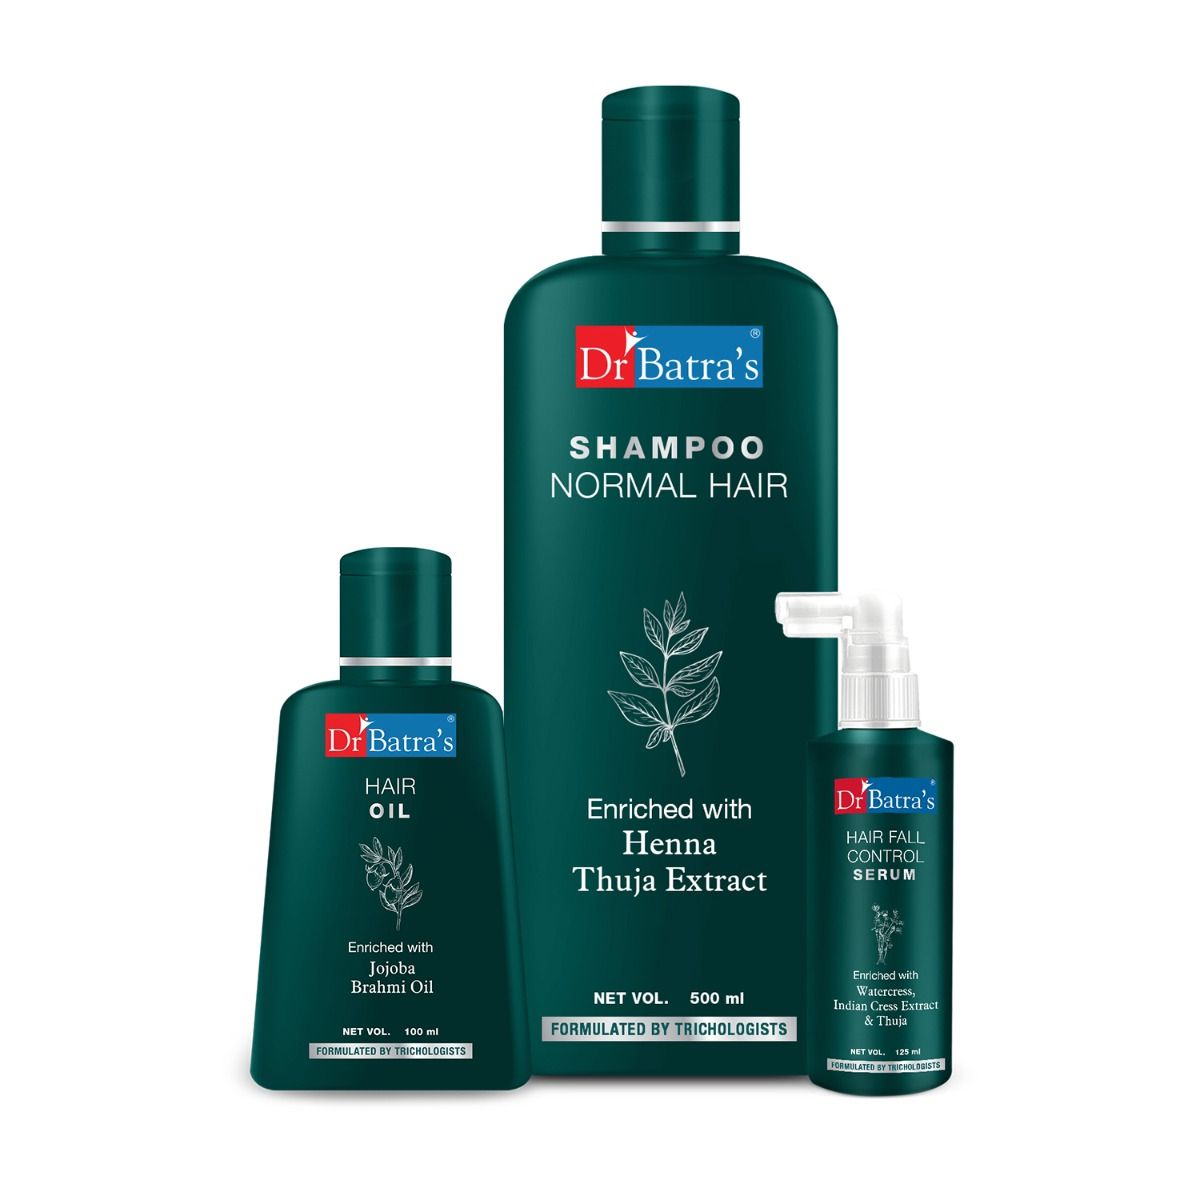     			Dr Batra's Hair Fall Control Serum125 Ml, Normal Shampoo 500 Ml And Hair Oil 100 Ml (Pack Of 3)